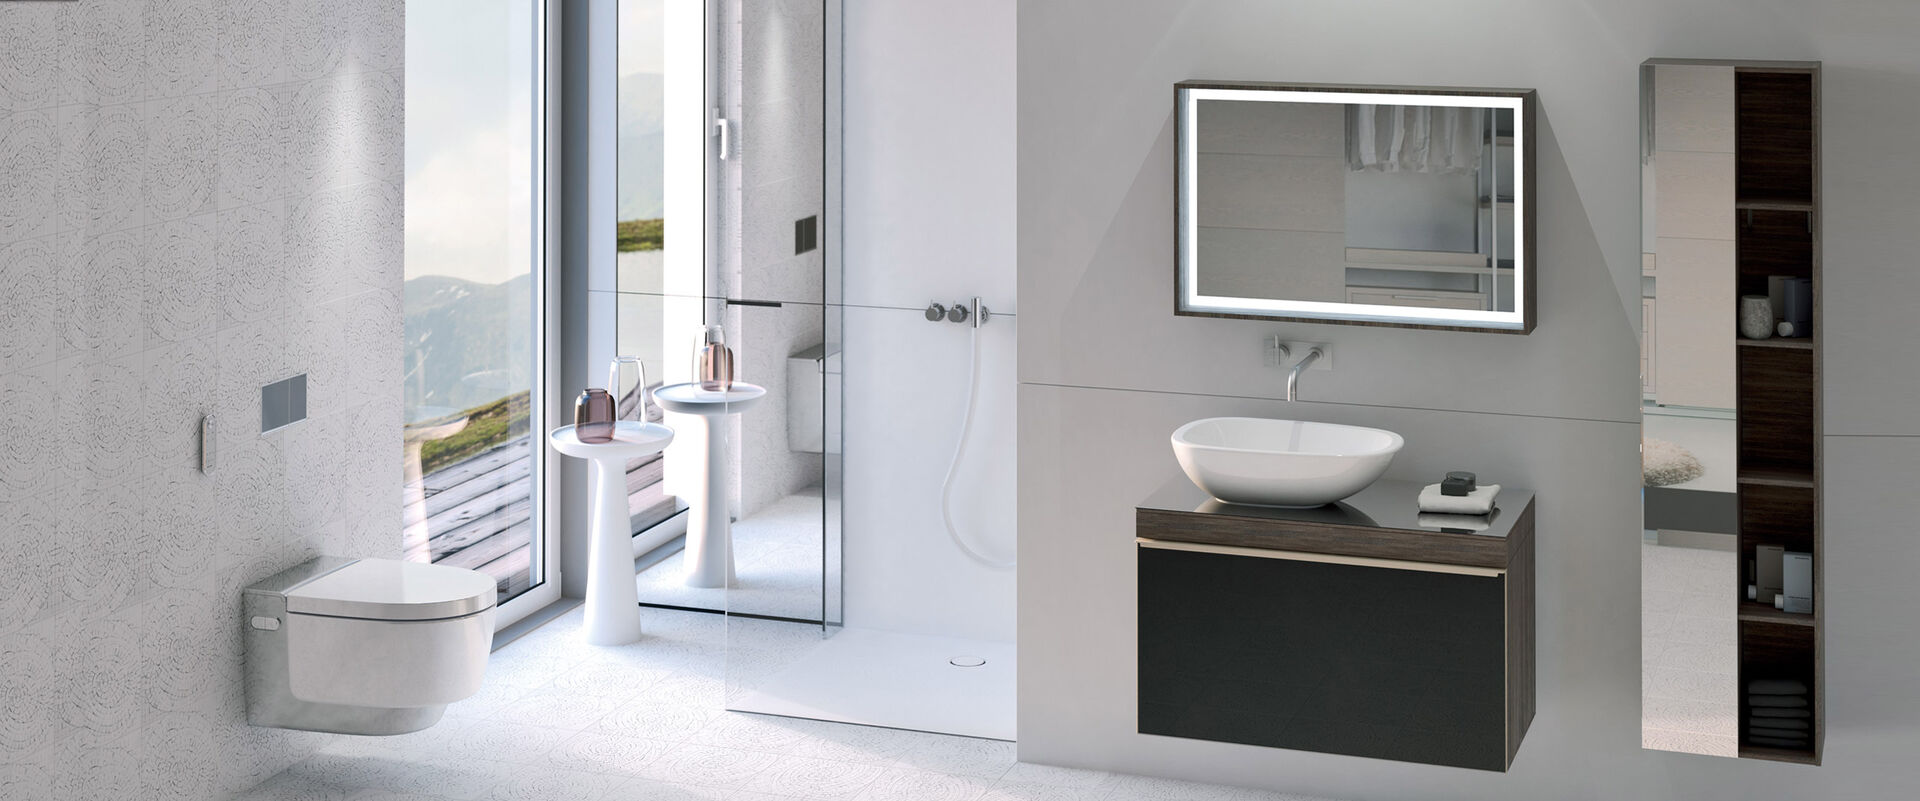 Helles Badezimmer mit Dusch-WC AquaClean Mera von Geberit kombiniert mit einem Waschplatz in dunkelbraun und einer bodenebenen Dusche. 